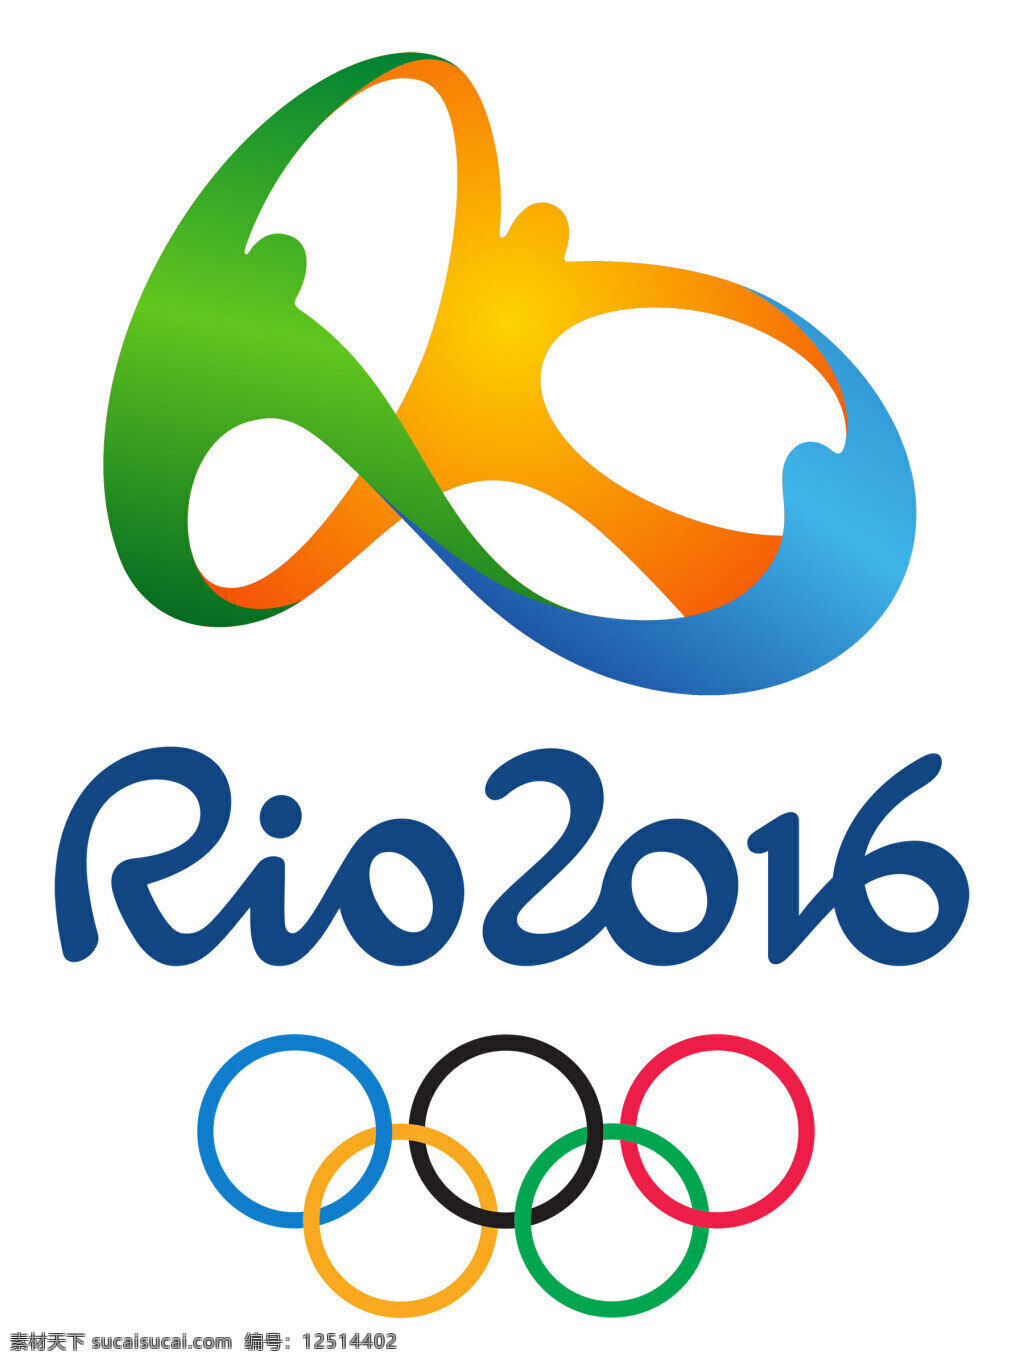 2016 里约 奥运会 标志 sketch 彩色 五环 图标 格式